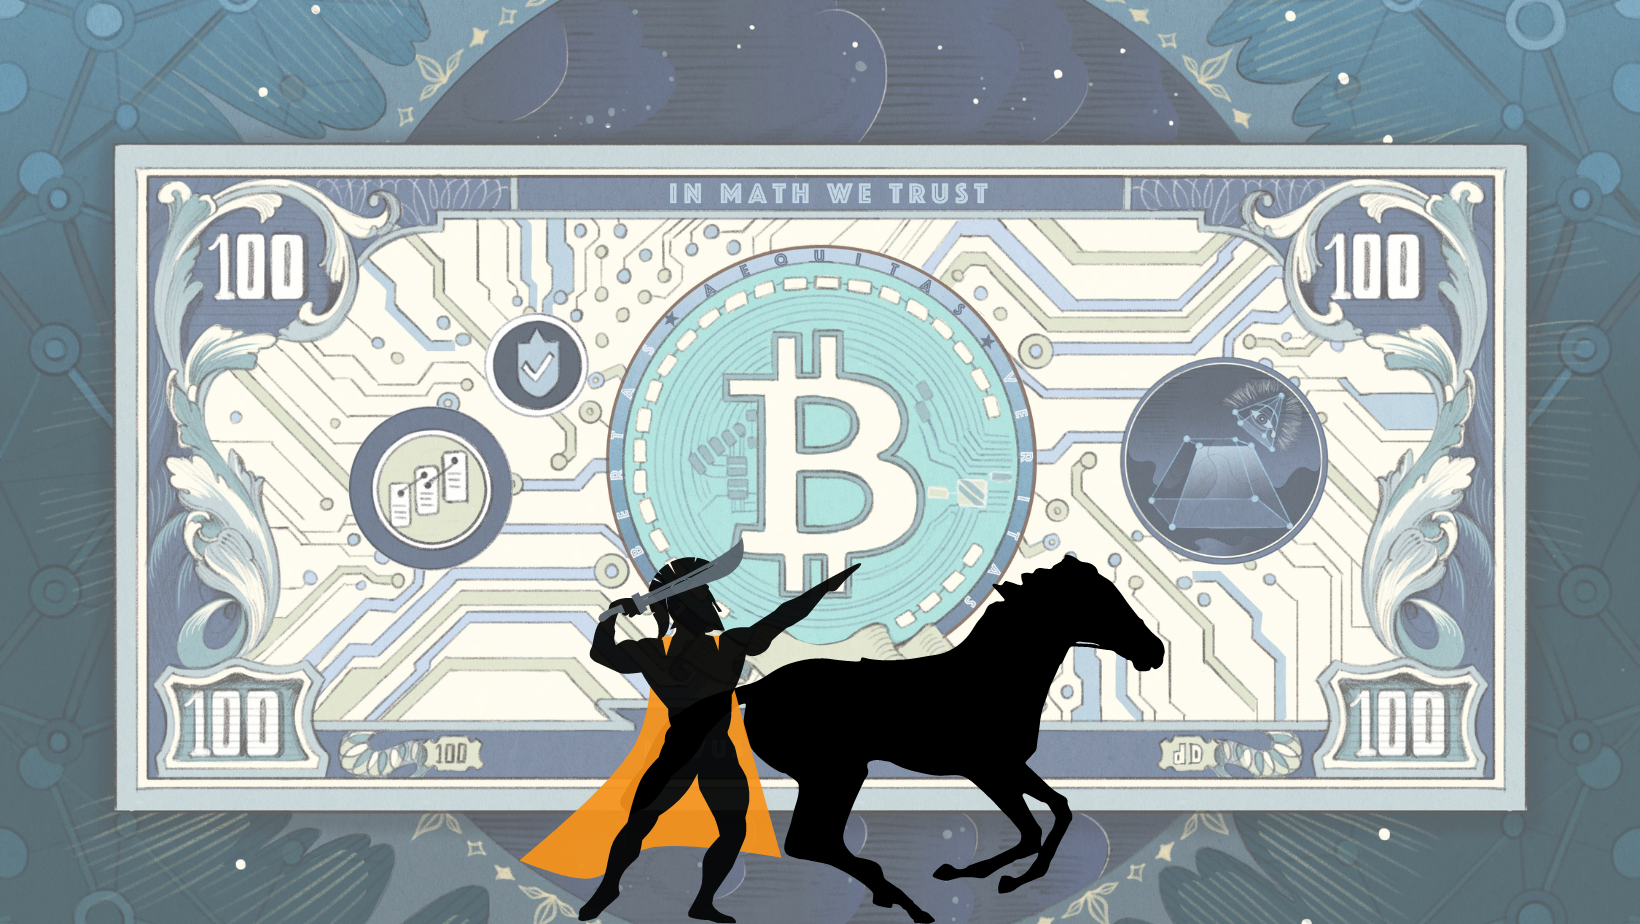 Bitcoin First: Warum Anleger Bitcoin getrennt von anderen digitalen Vermögenswerten betrachten müssen